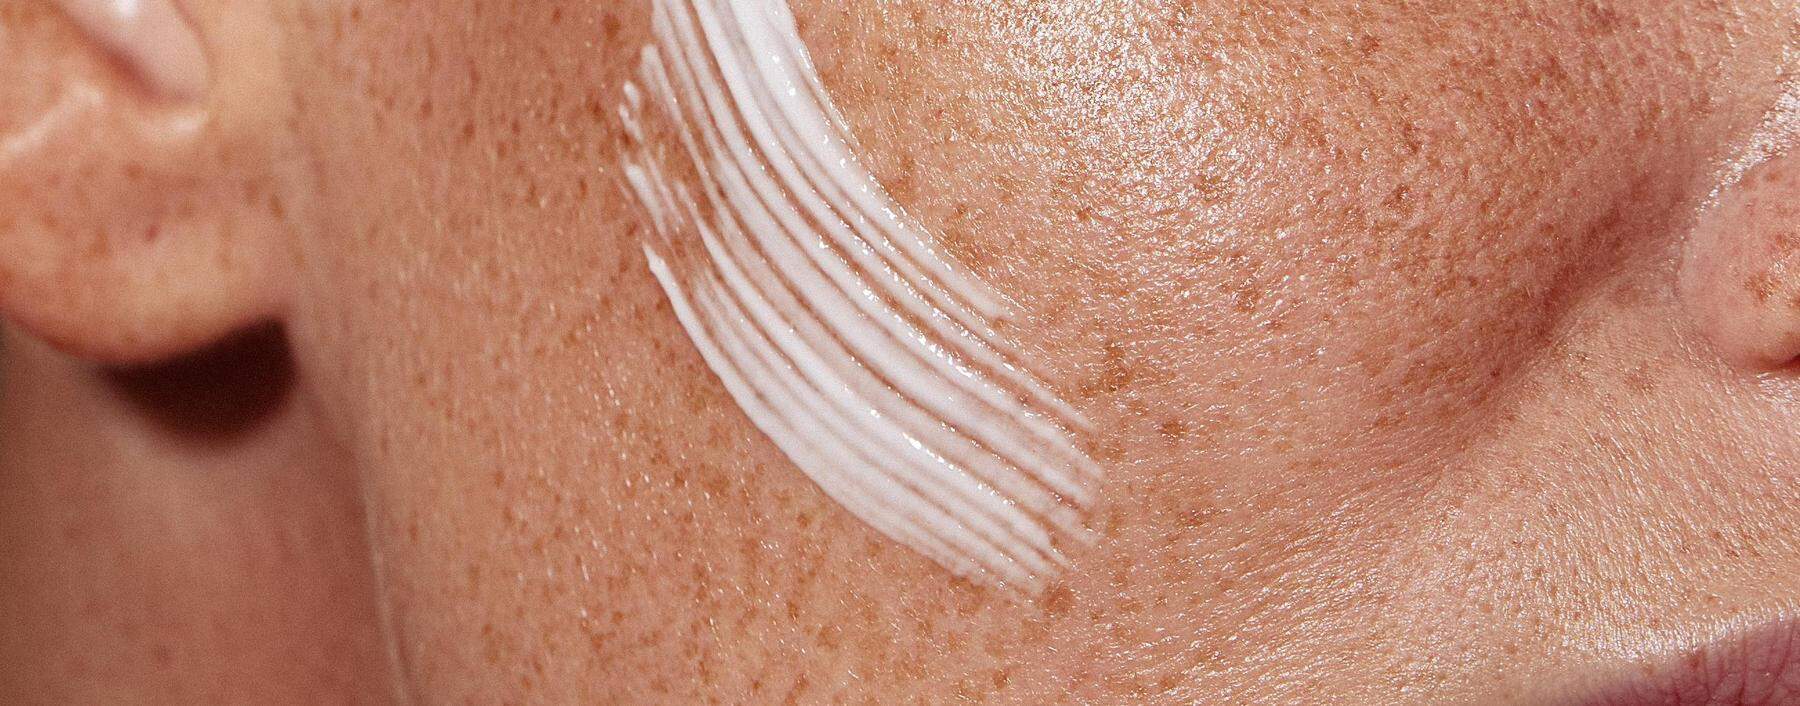 Mit abwechselnden Produkten die Haut eincremen: Dafür wirbt die Methode „Skin Cycling“.